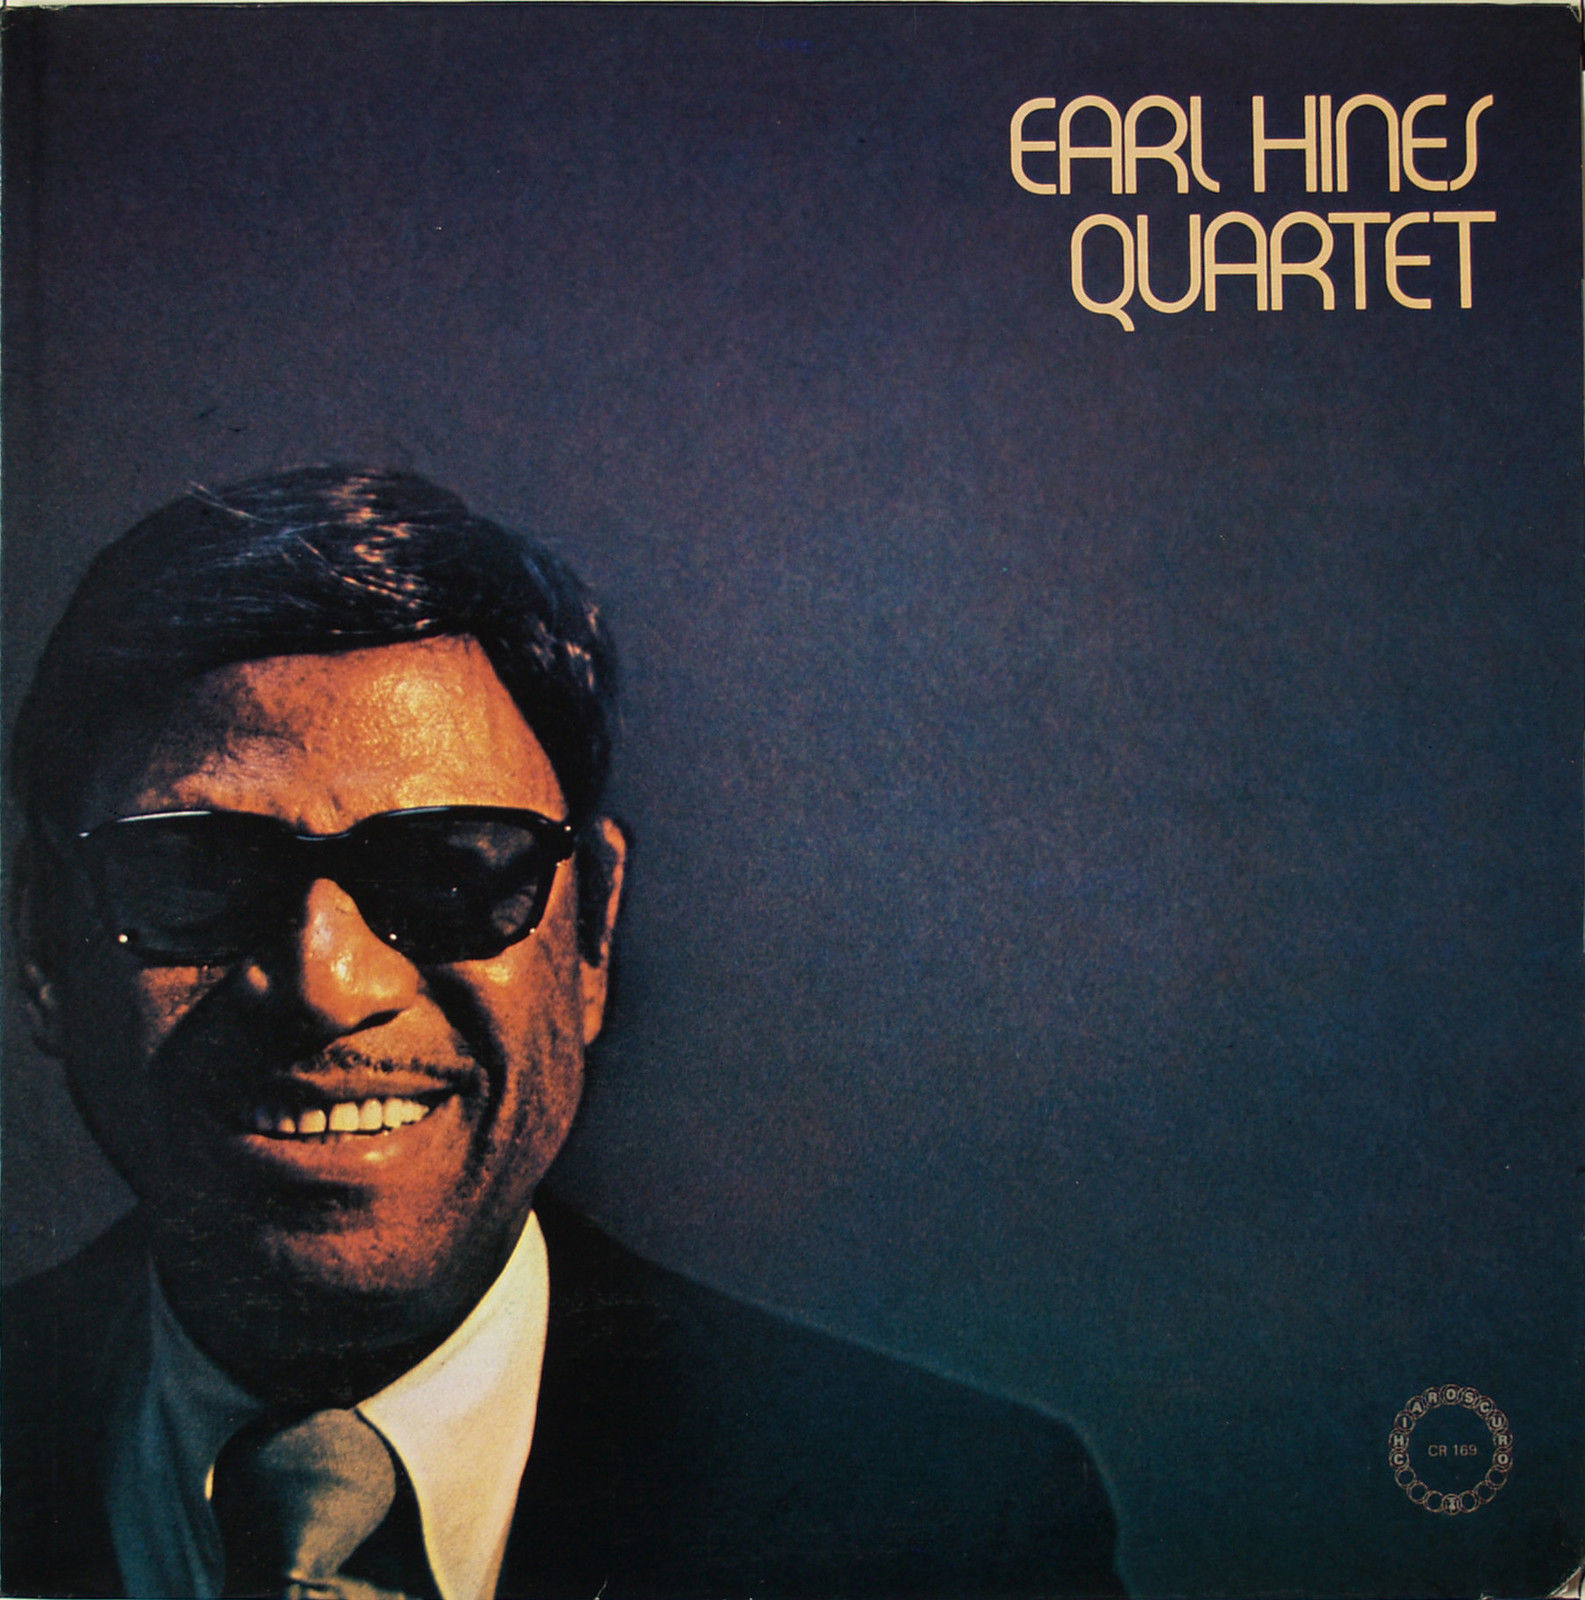 EARL HINES - Earl Hines Quartet cover 